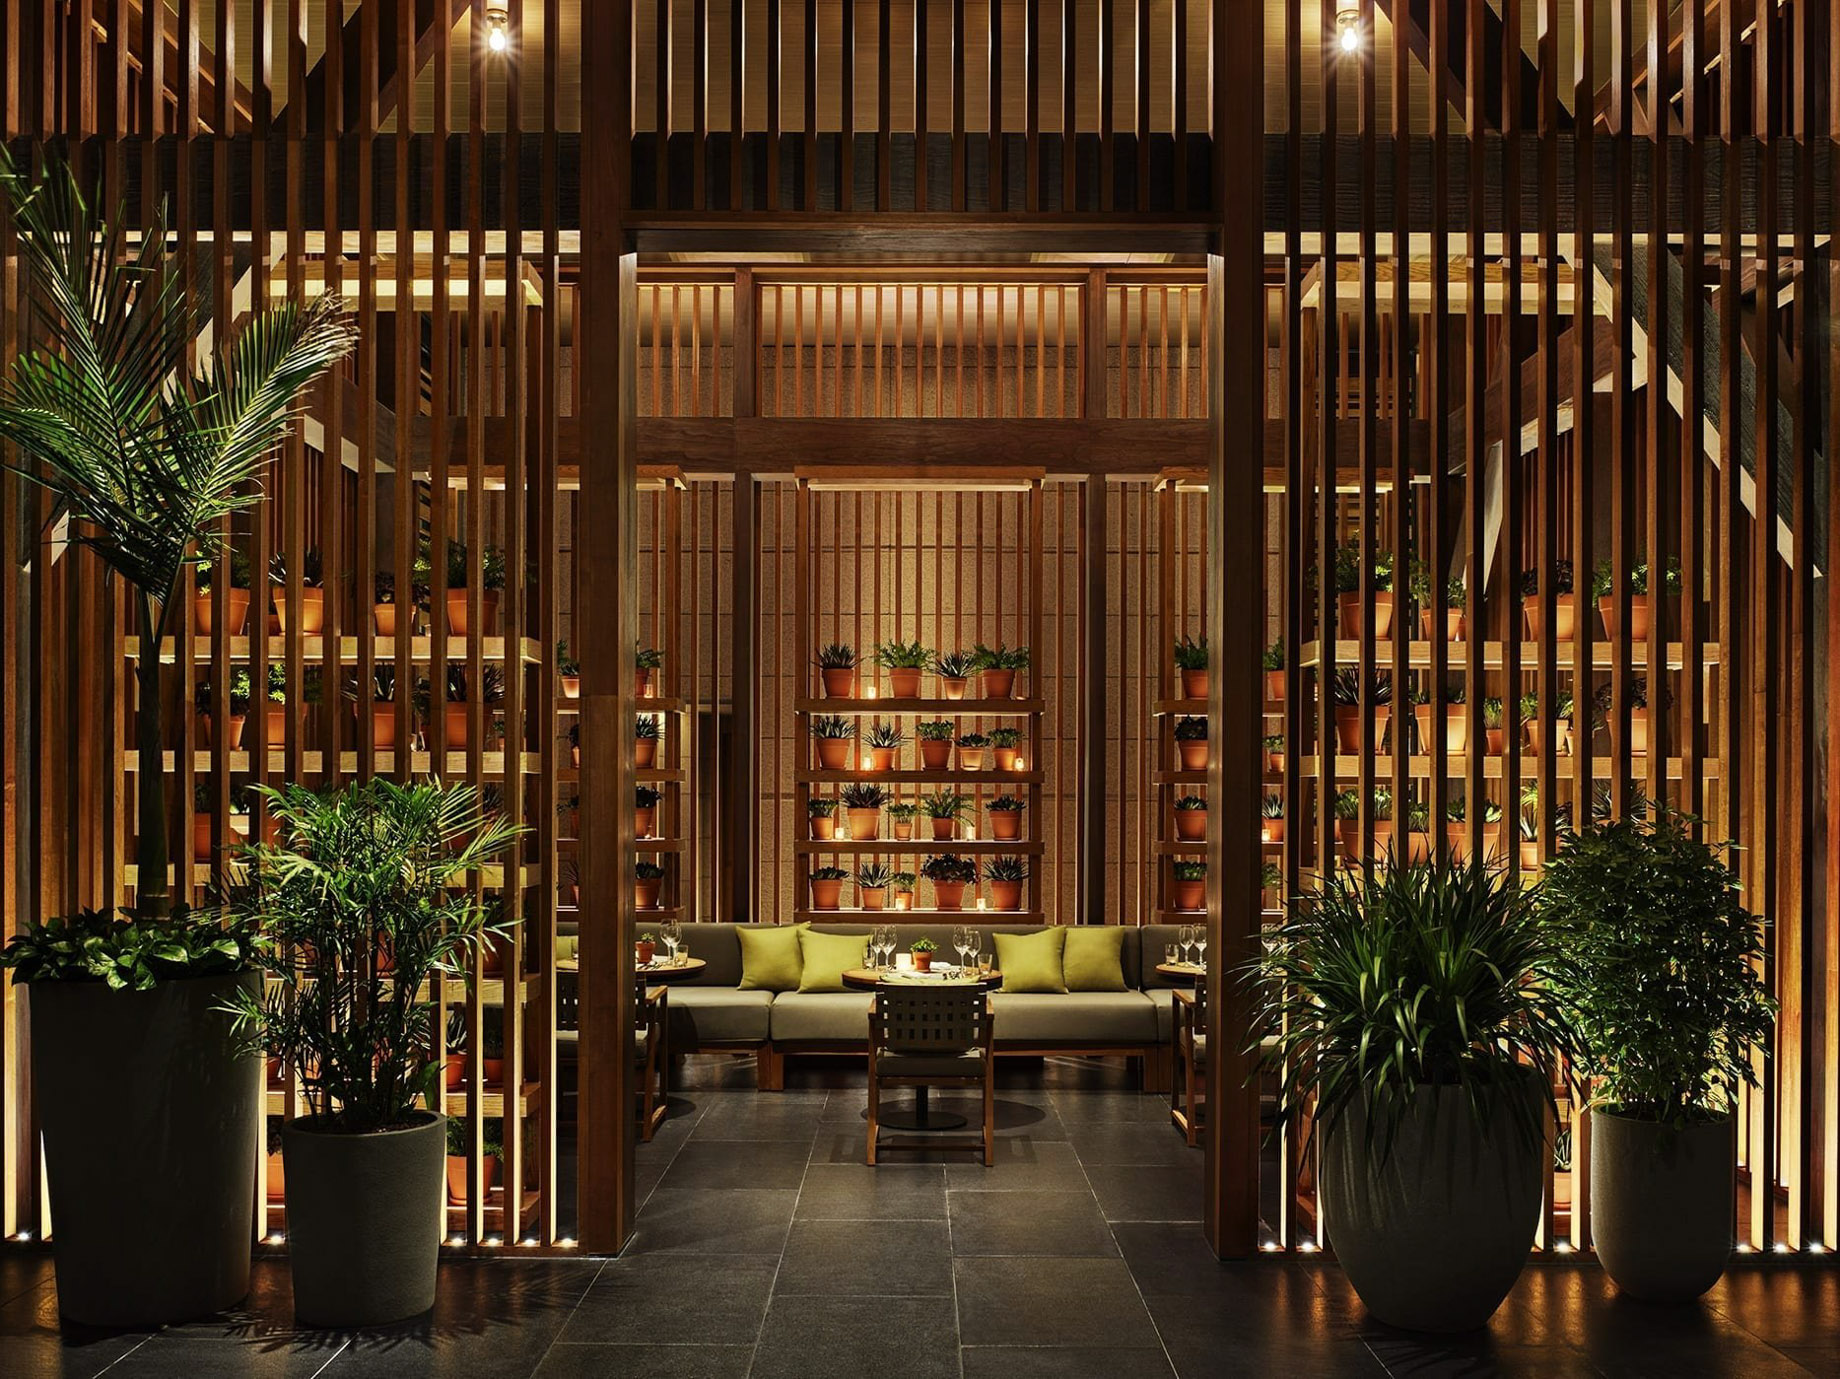 The Sanya EDITION Hotel – Sanya, Hainan, China – Market Interior